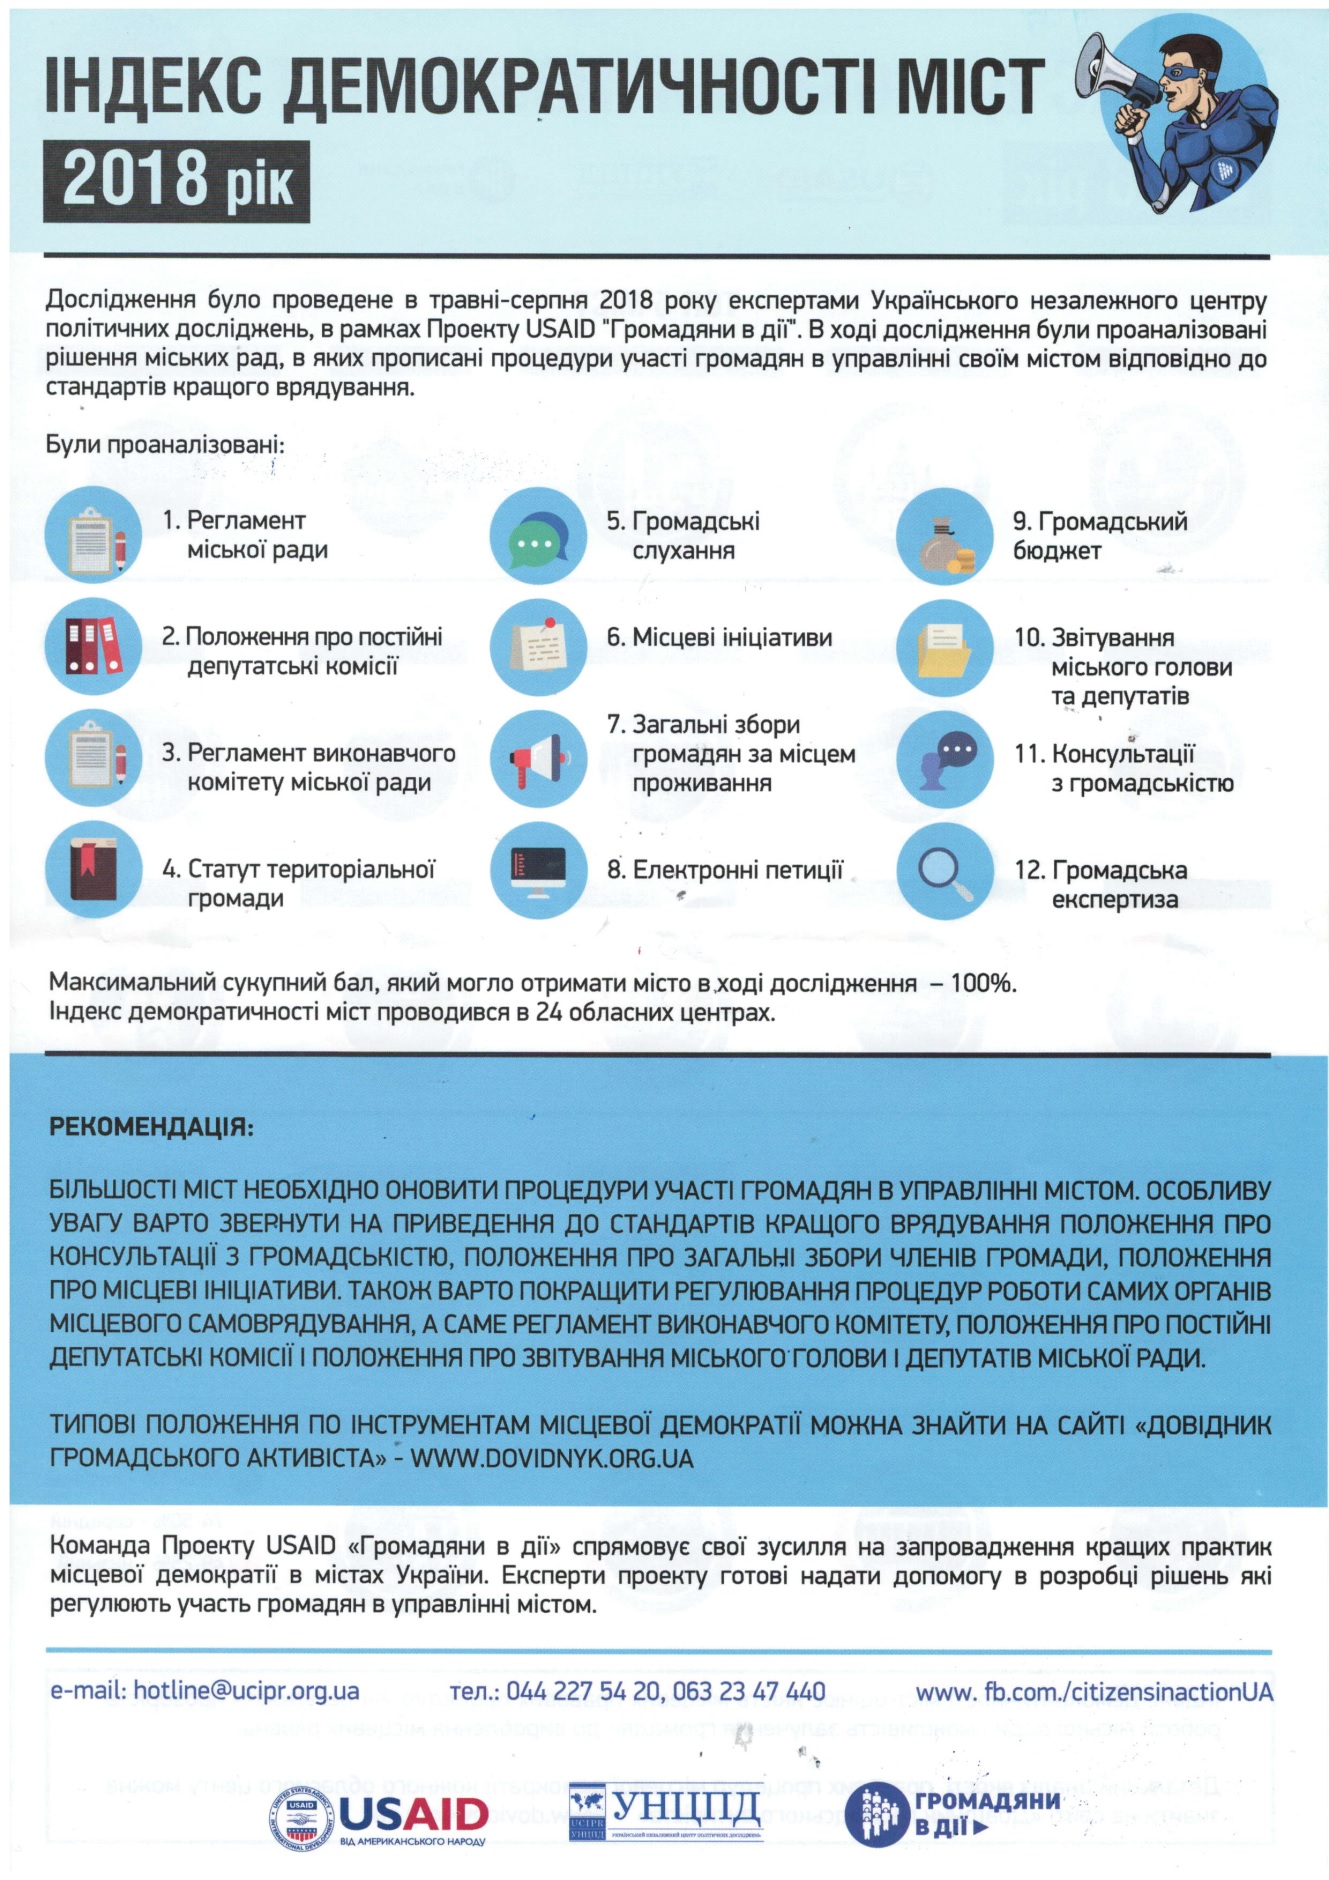 Ужгород –7-ий серед обласних центрів України у рейтингу “Індекс демократичності міст”